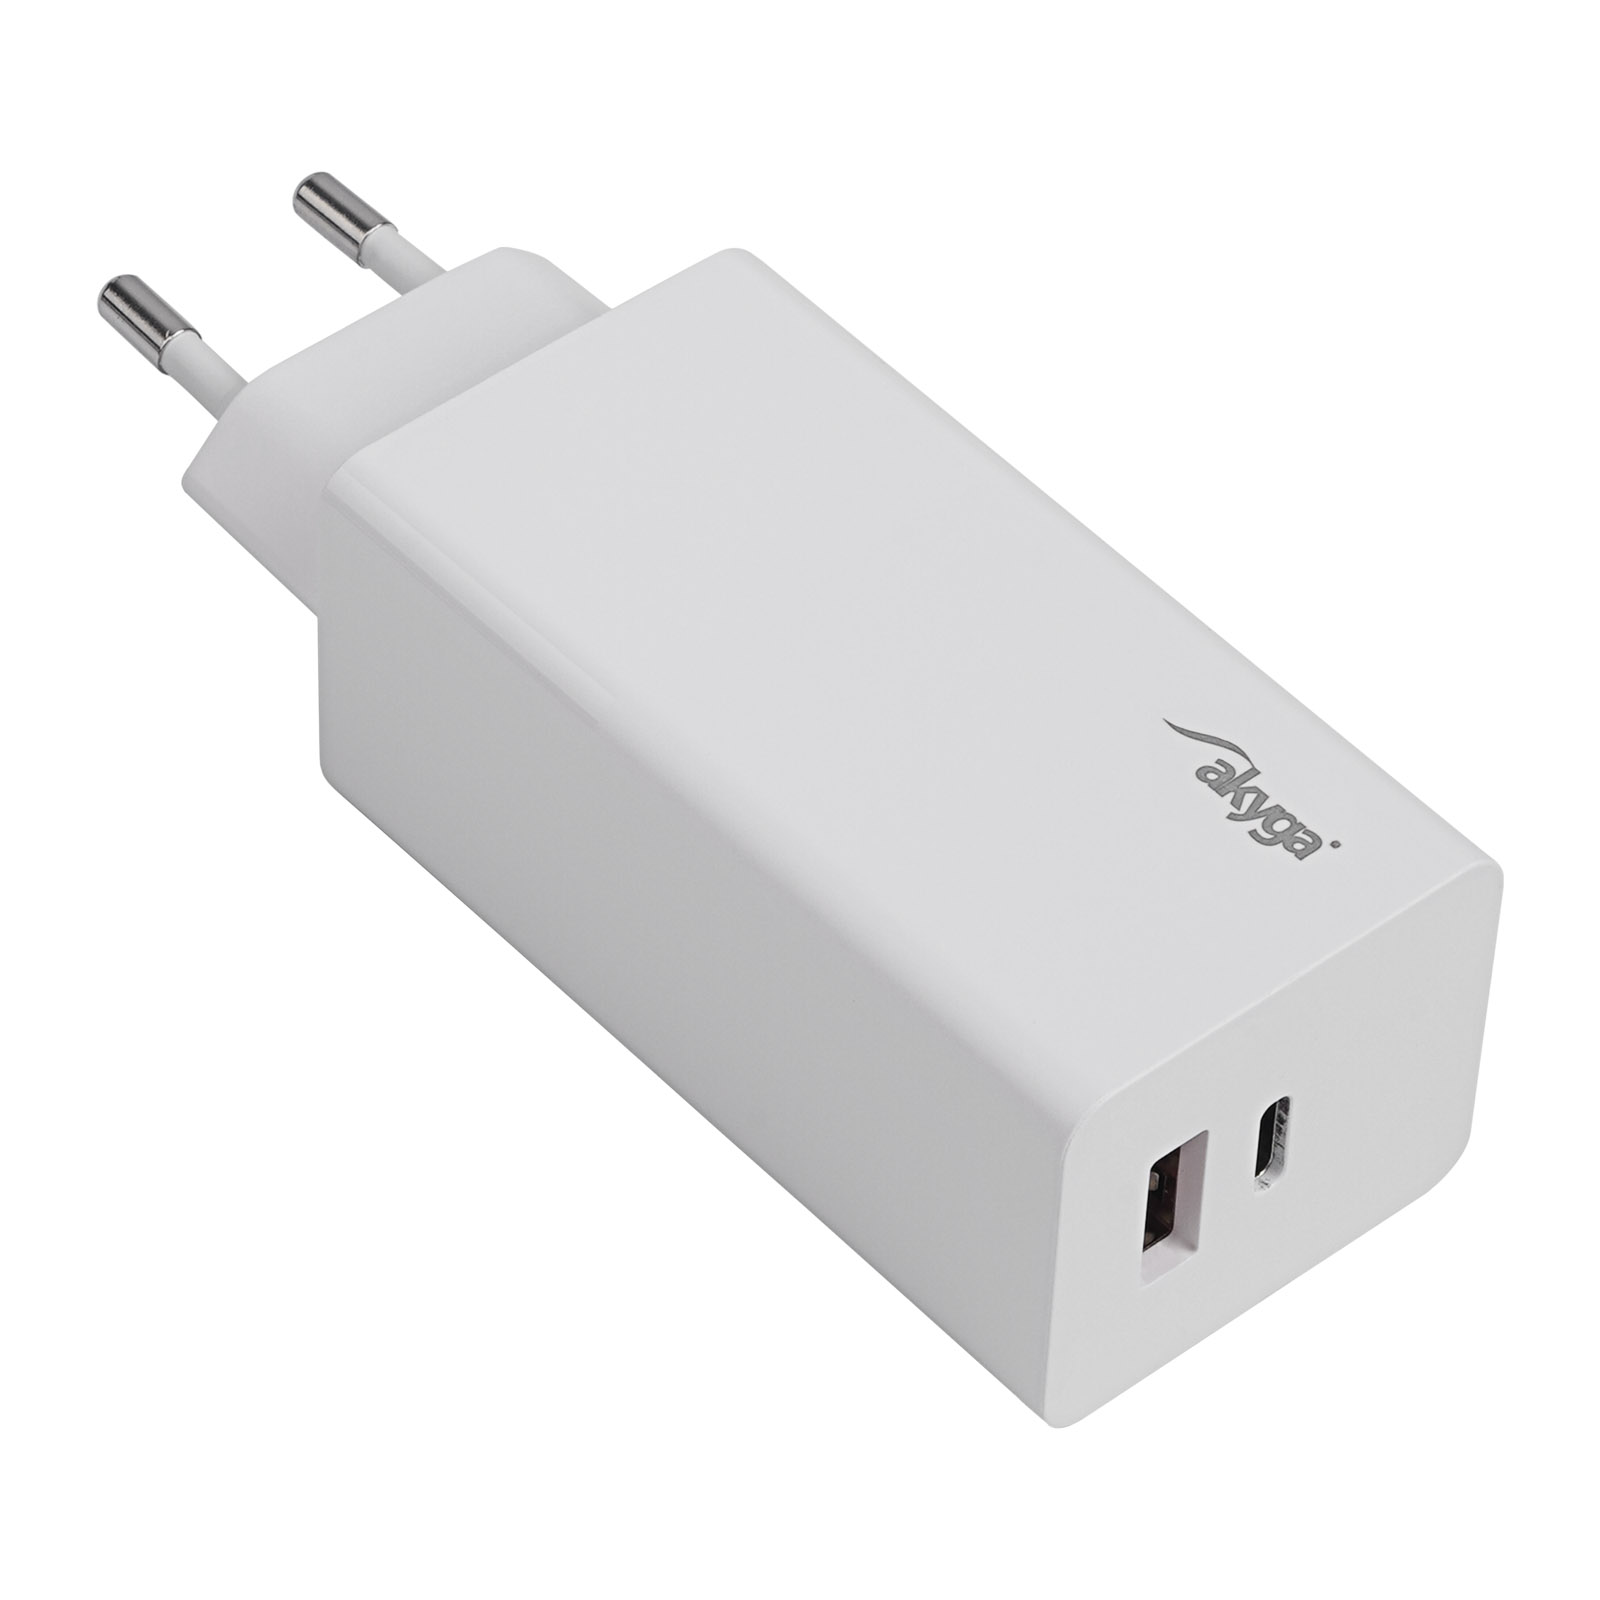 Biała ładowarka USB USB-A + USB-C PD 5-20V / max. 5A 100W Quick Charge 3.0 GaN Akyga AK-CH-20 z widocznym wejściem